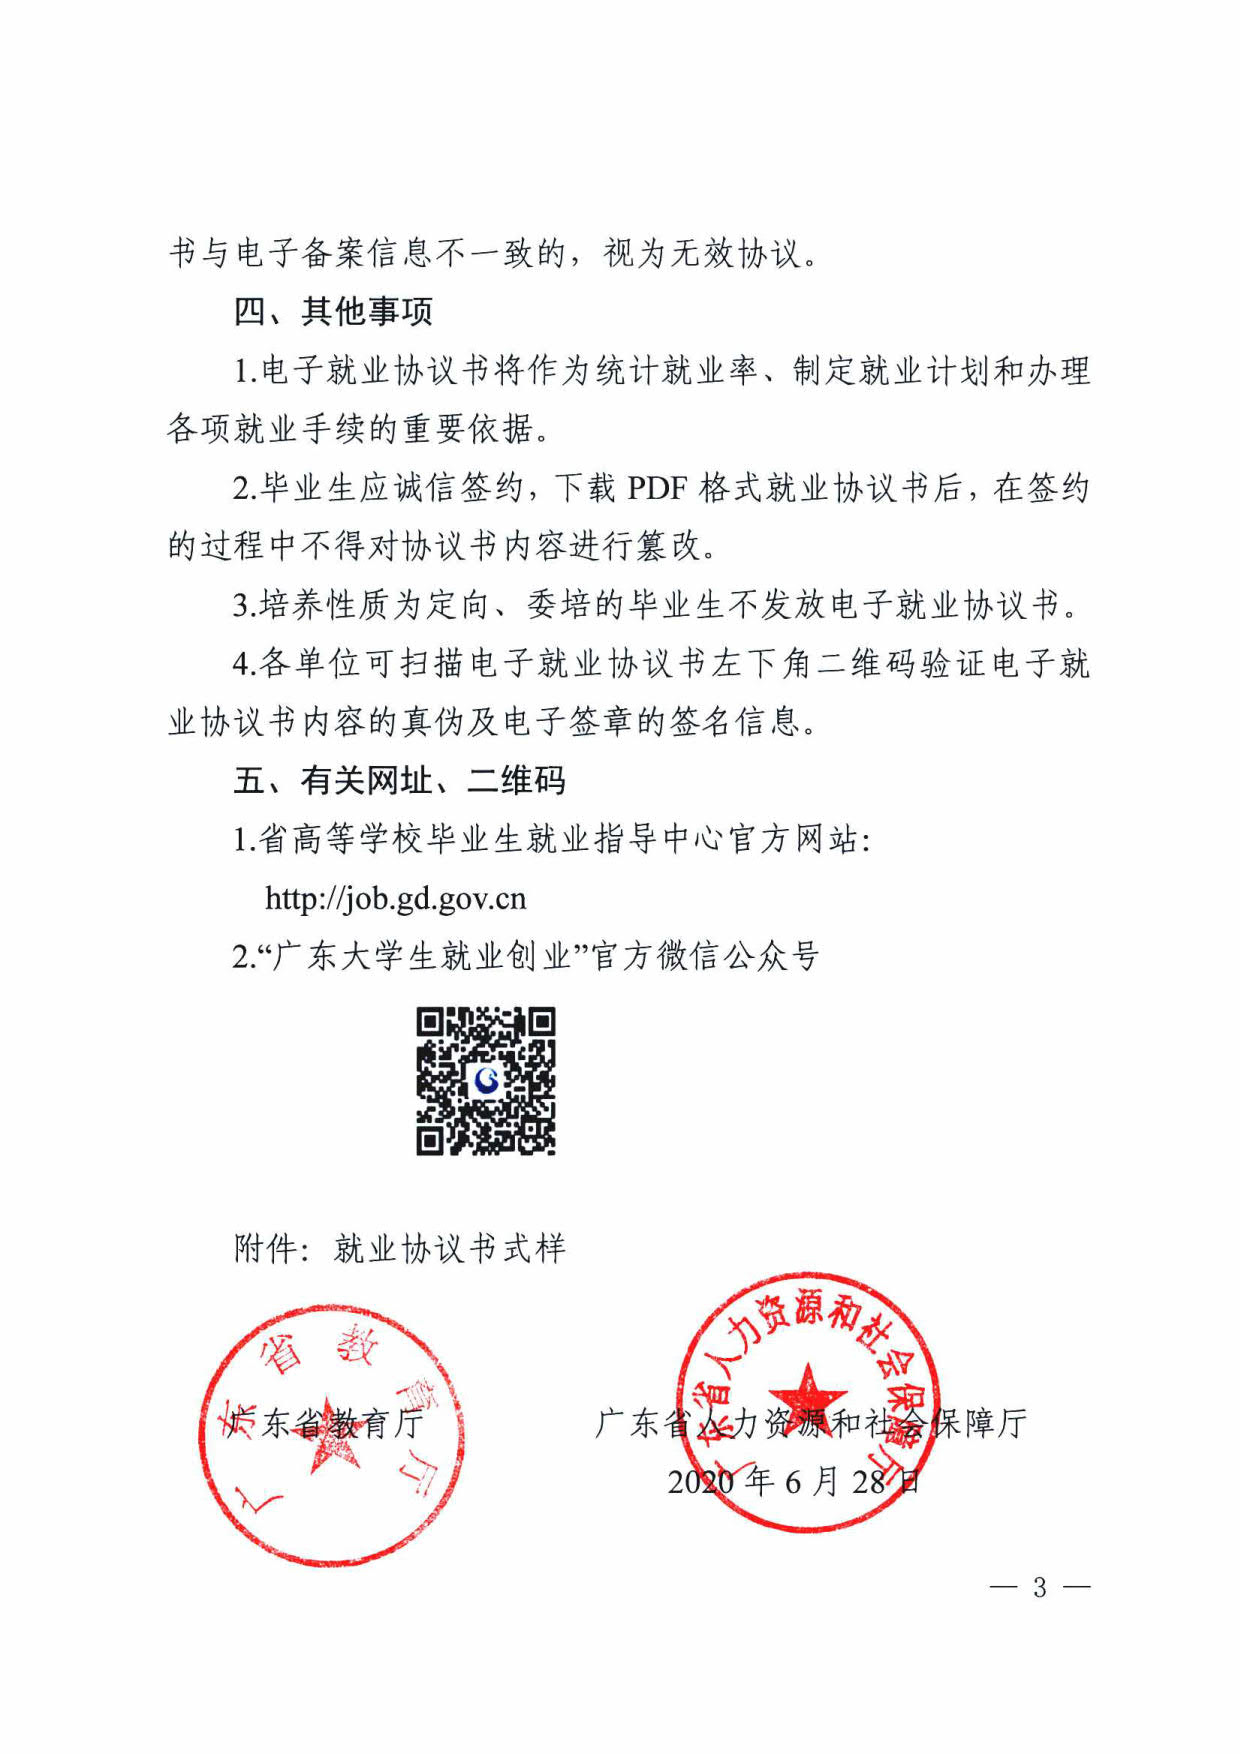 广东省教育厅办公室关于推广使用电子就业协议书的通知_3.jpg